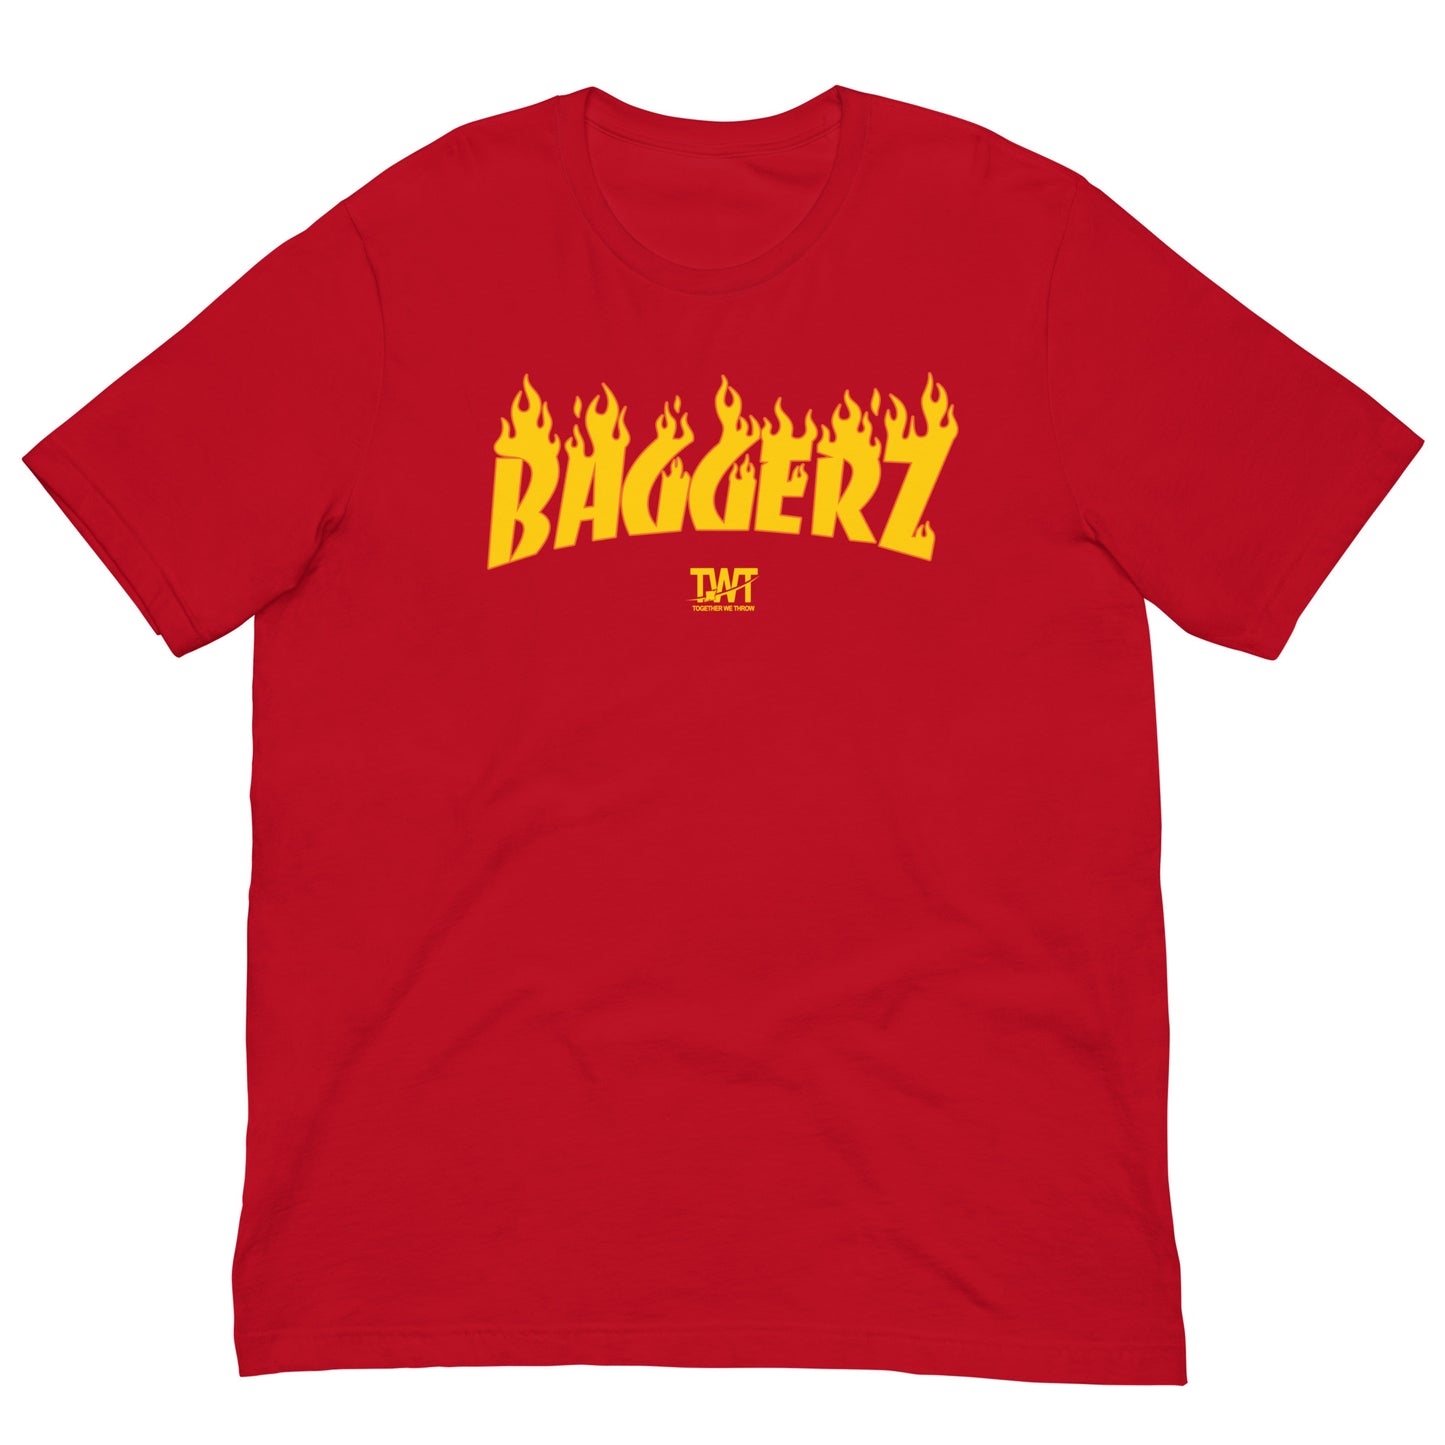 Baggerz Tshirt